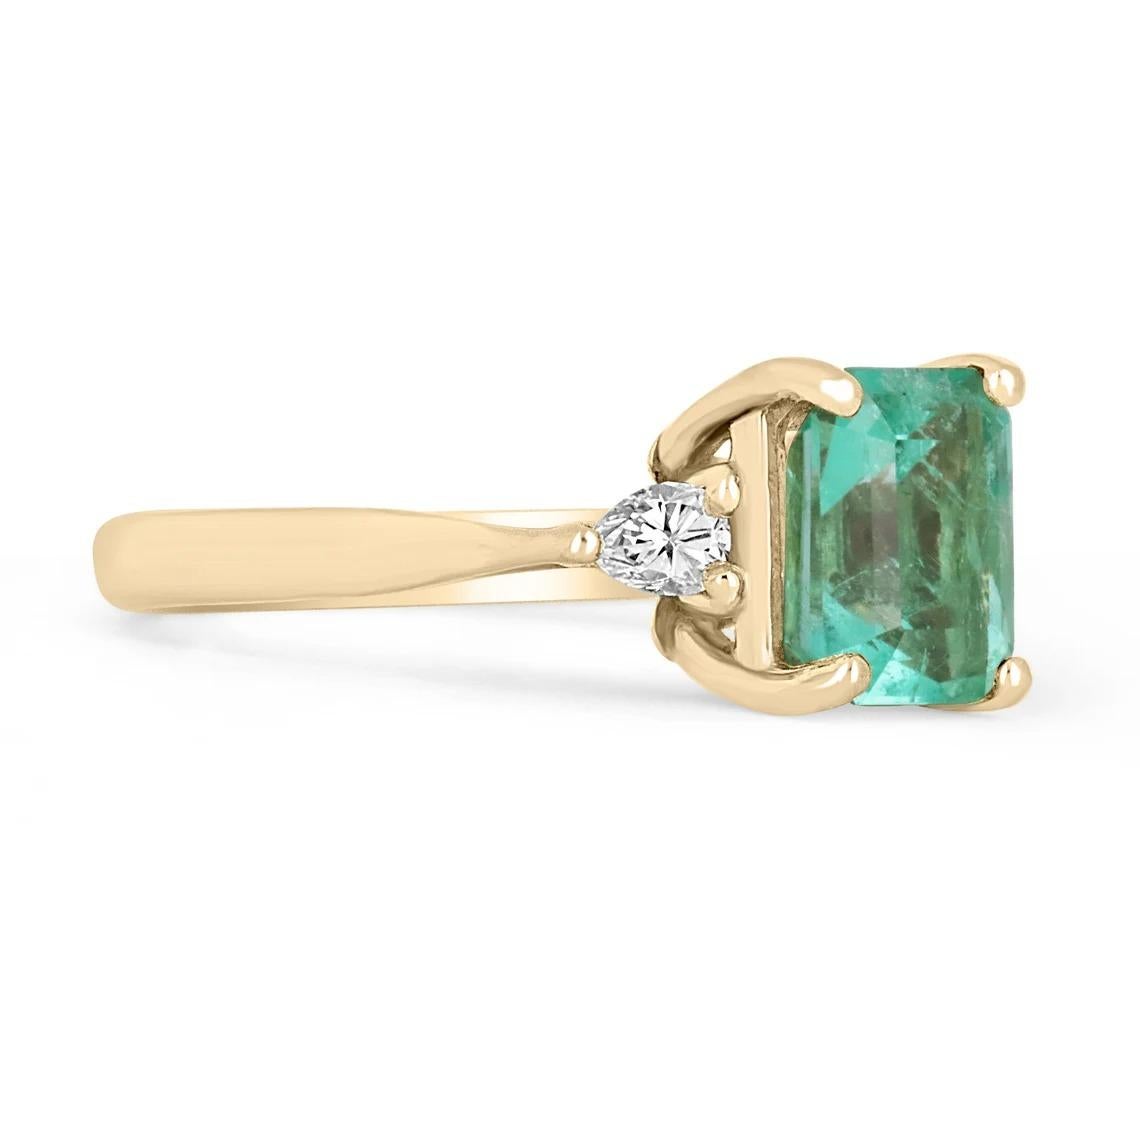 Ein klassischer kolumbianischer Smaragd- und Diamantring zur Verlobung, als Statement oder für die rechte Hand. Dieser Ring ist aus glänzendem 14-karätigem Gold gefertigt und mit einem natürlichen kolumbianischen Smaragd aus den berühmten Muzo-Minen